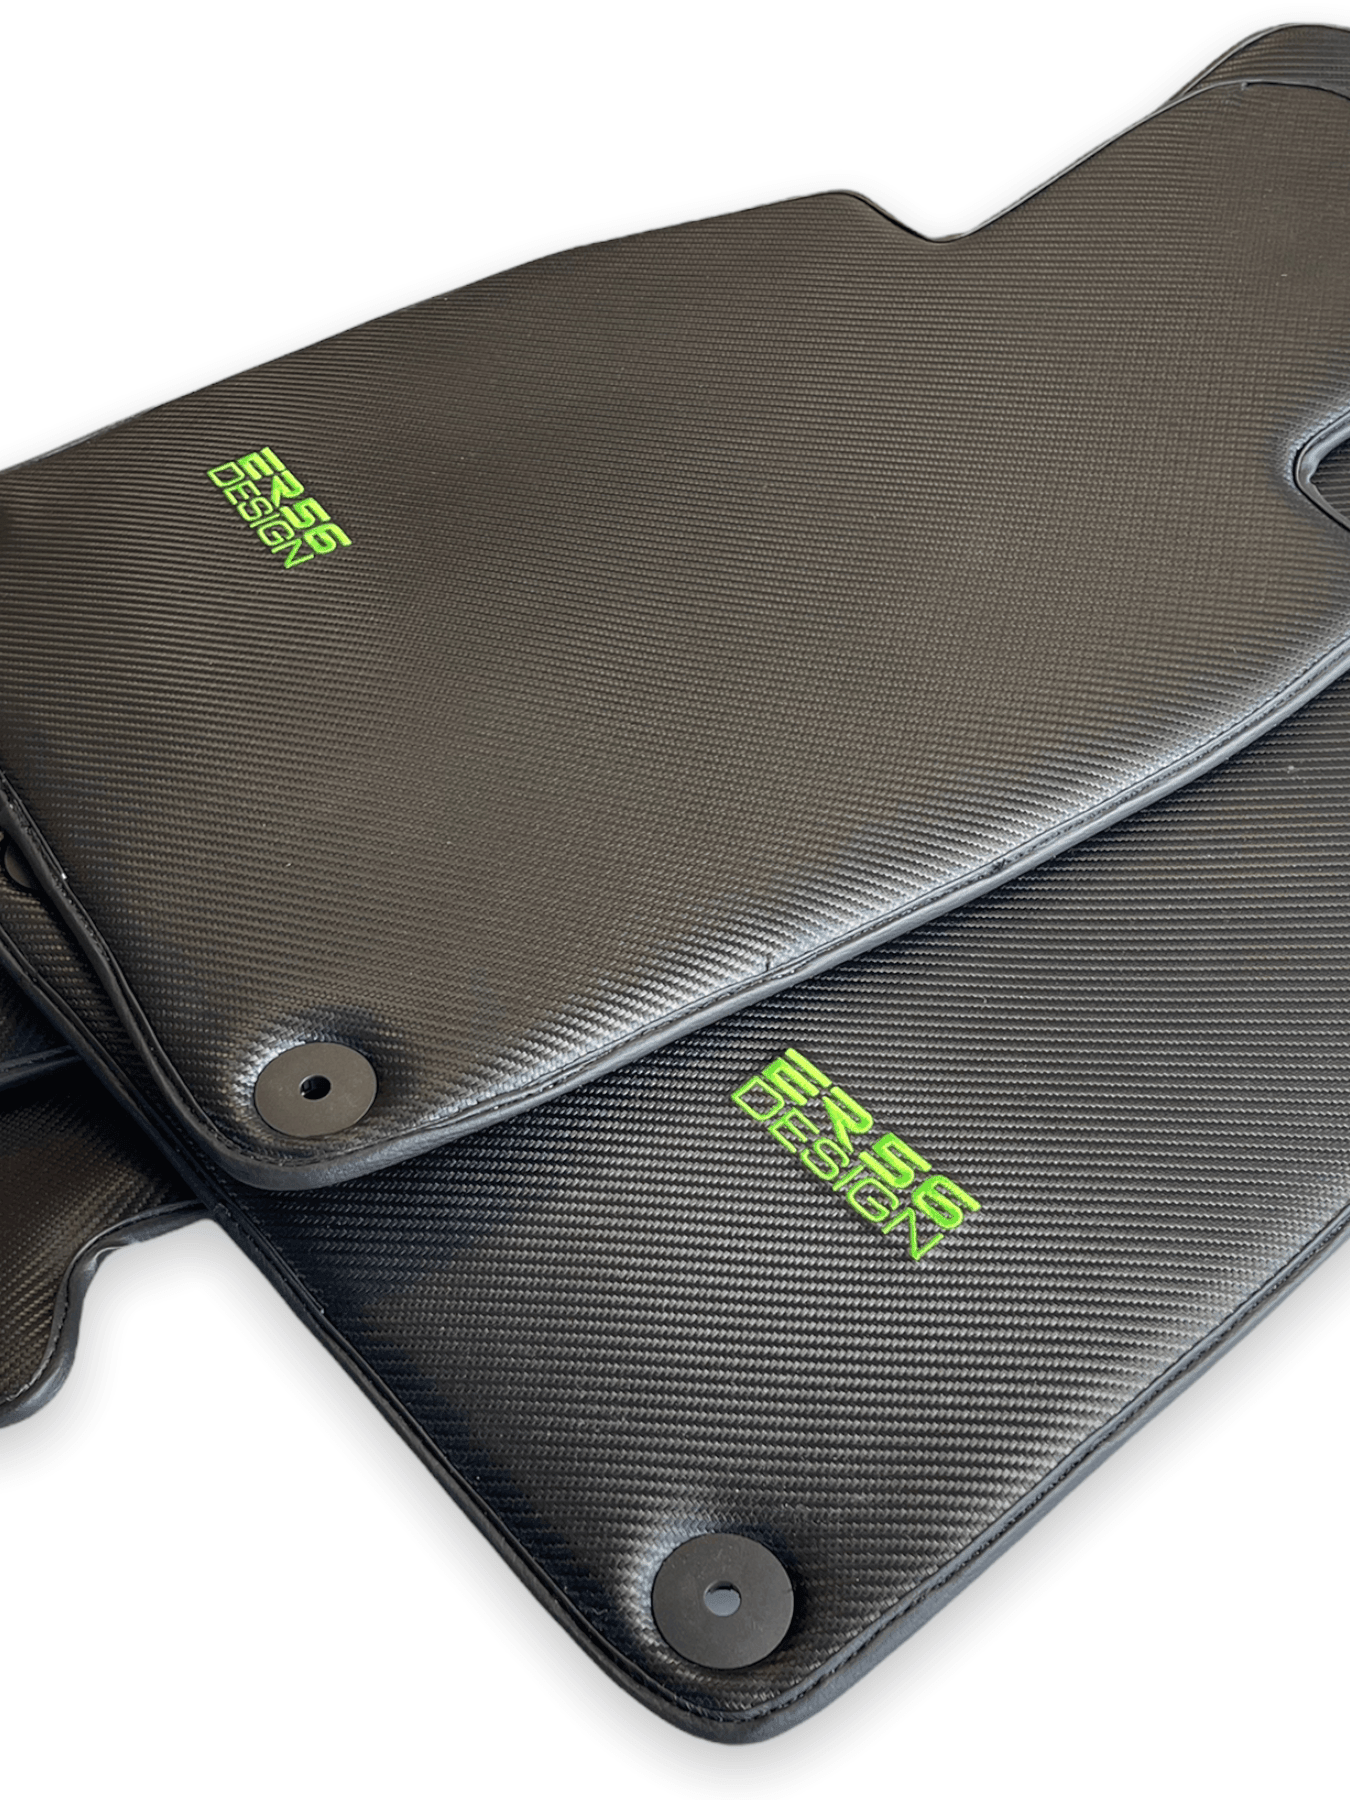 Carbon Fiber Floor Mats for Porsche Cayenne (2010-2018) Green Sewing - AutoWin